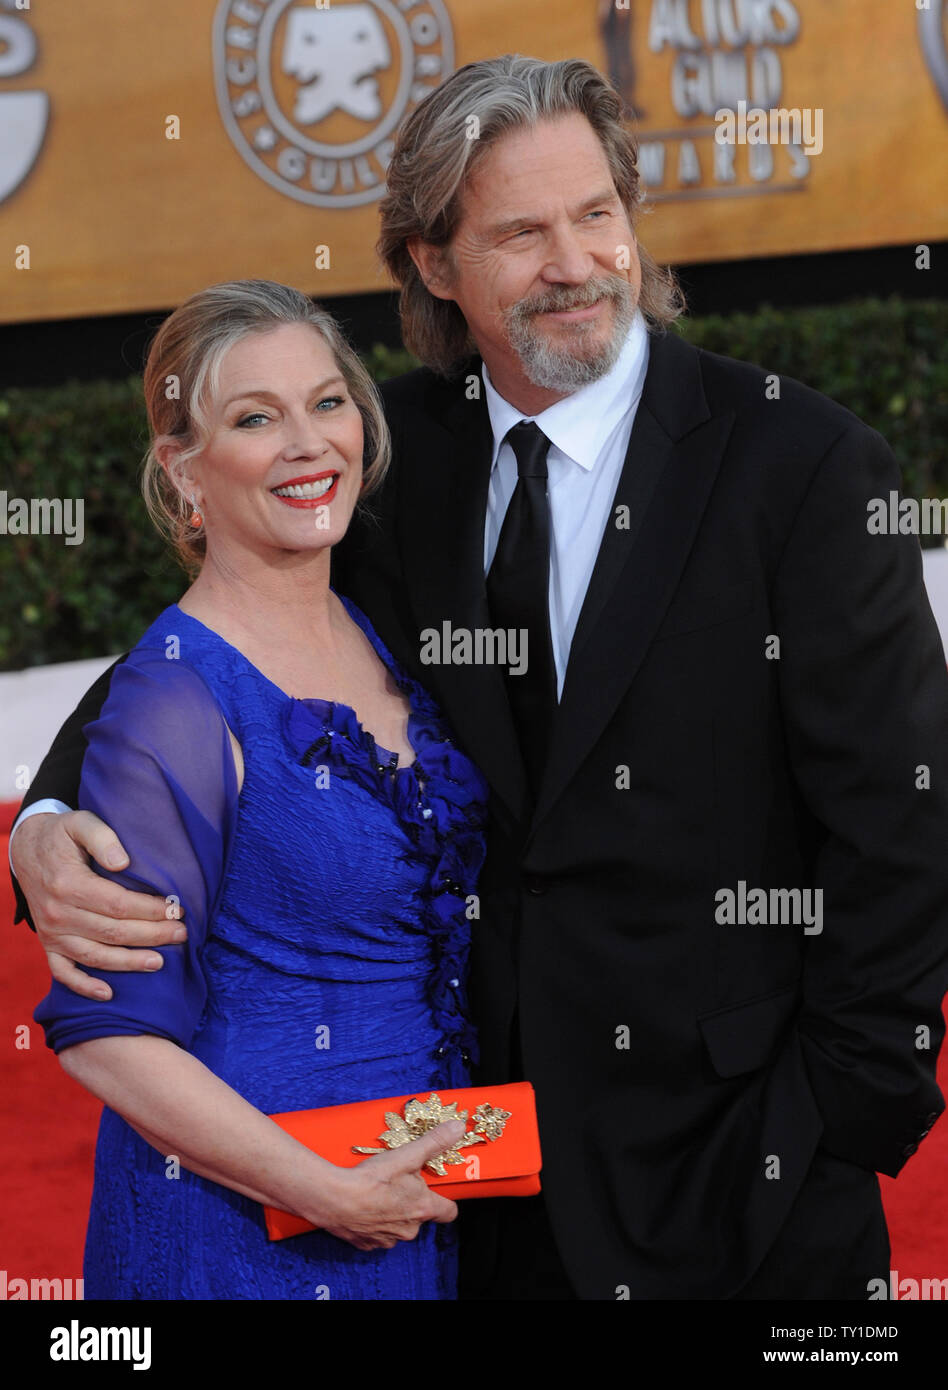 Schauspieler Jeff Bridges und seine Frau Susan Geston kommen an der 16. jährlichen Screen Actors Guild Awards in Los Angeles am 23. Januar 2010. UPI/Jim Ruymen Stockfoto